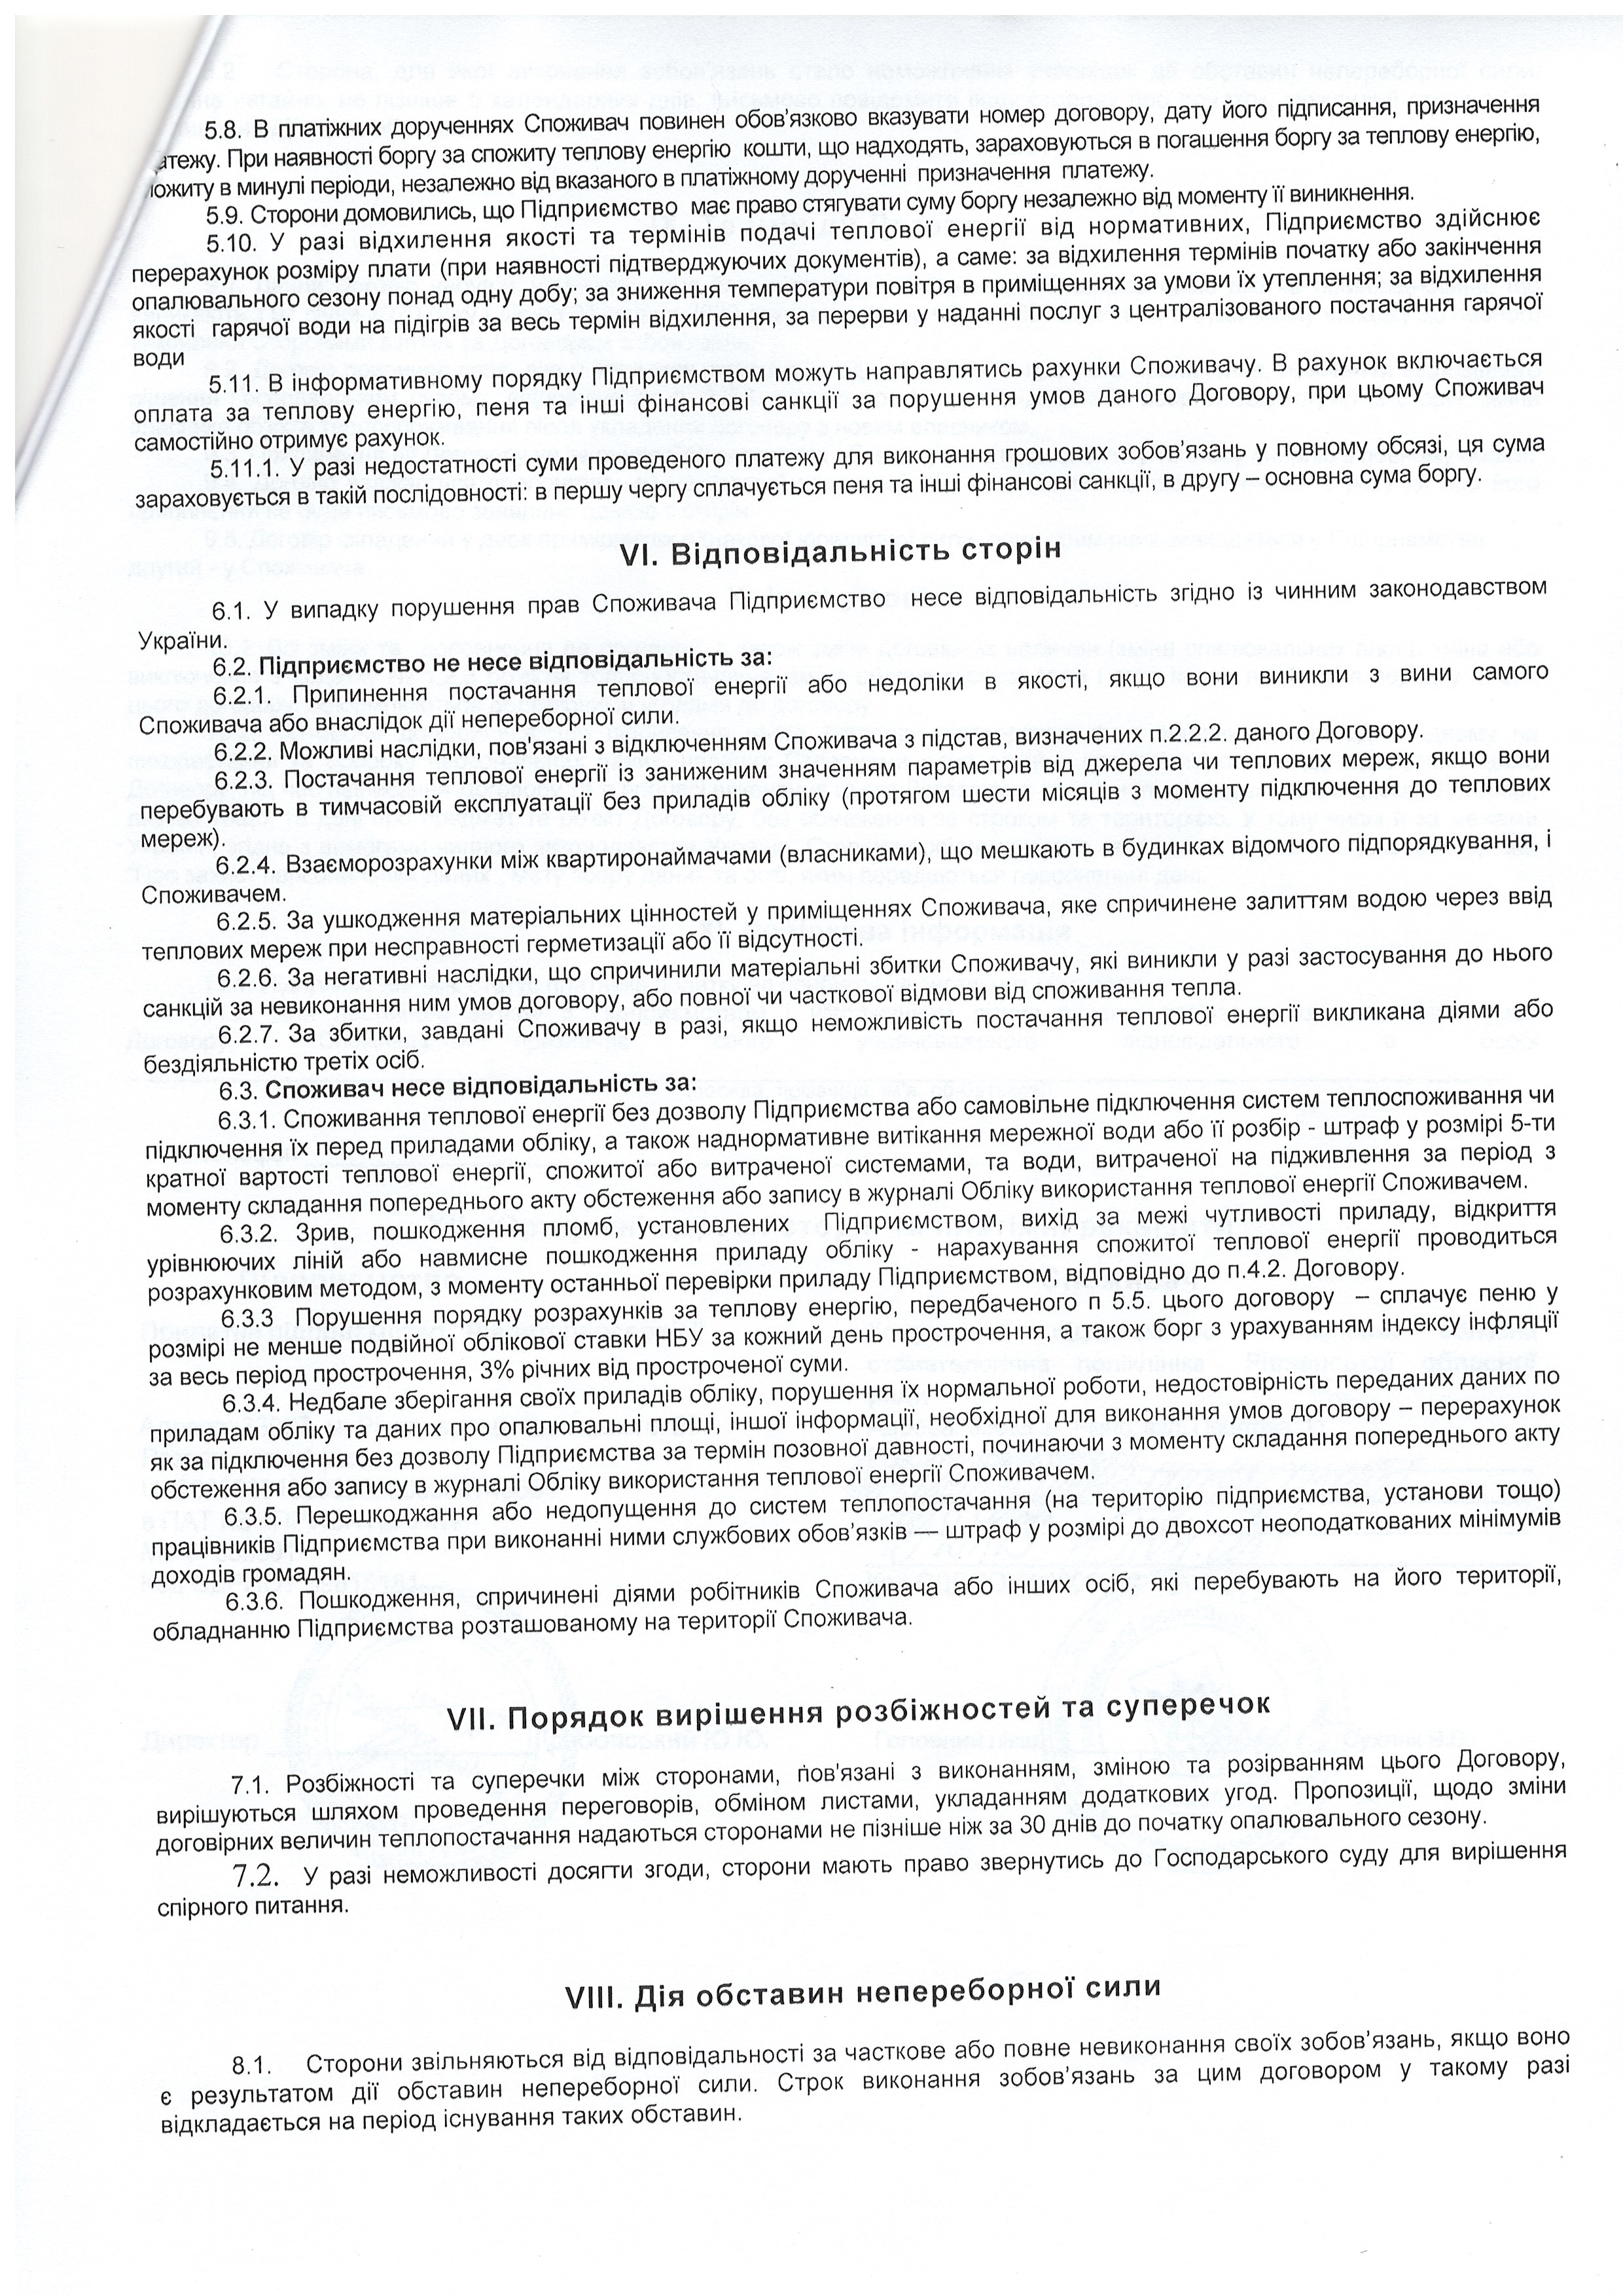 Договір №2035 про надання постуги з постачання теплової енергії ст.4